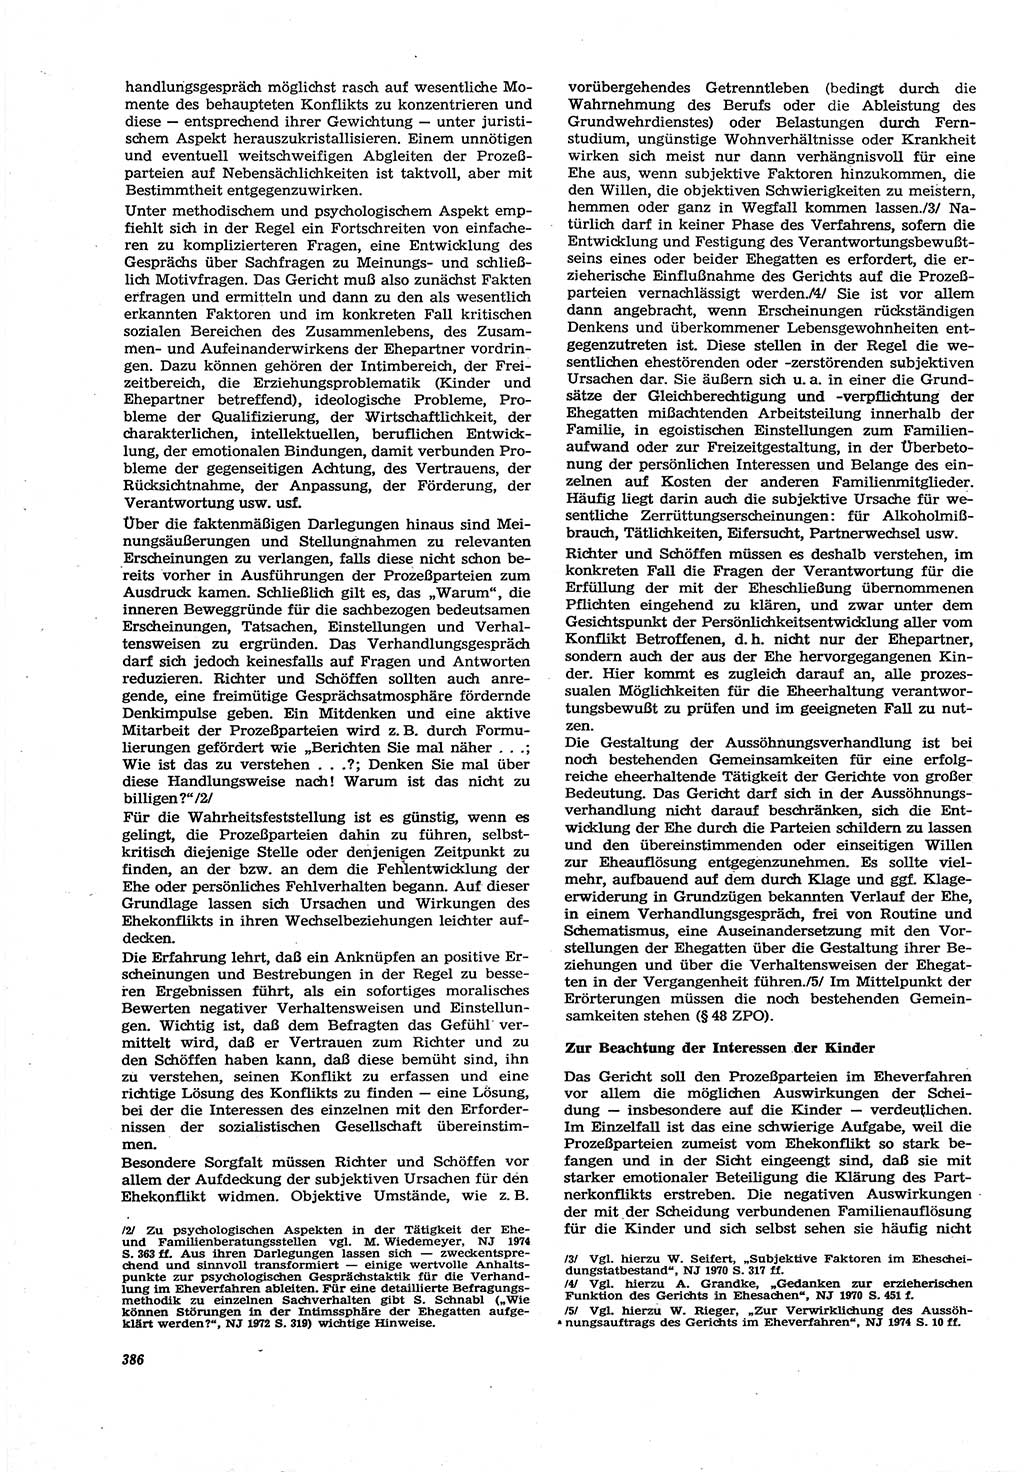 Neue Justiz (NJ), Zeitschrift für Recht und Rechtswissenschaft [Deutsche Demokratische Republik (DDR)], 30. Jahrgang 1976, Seite 386 (NJ DDR 1976, S. 386)